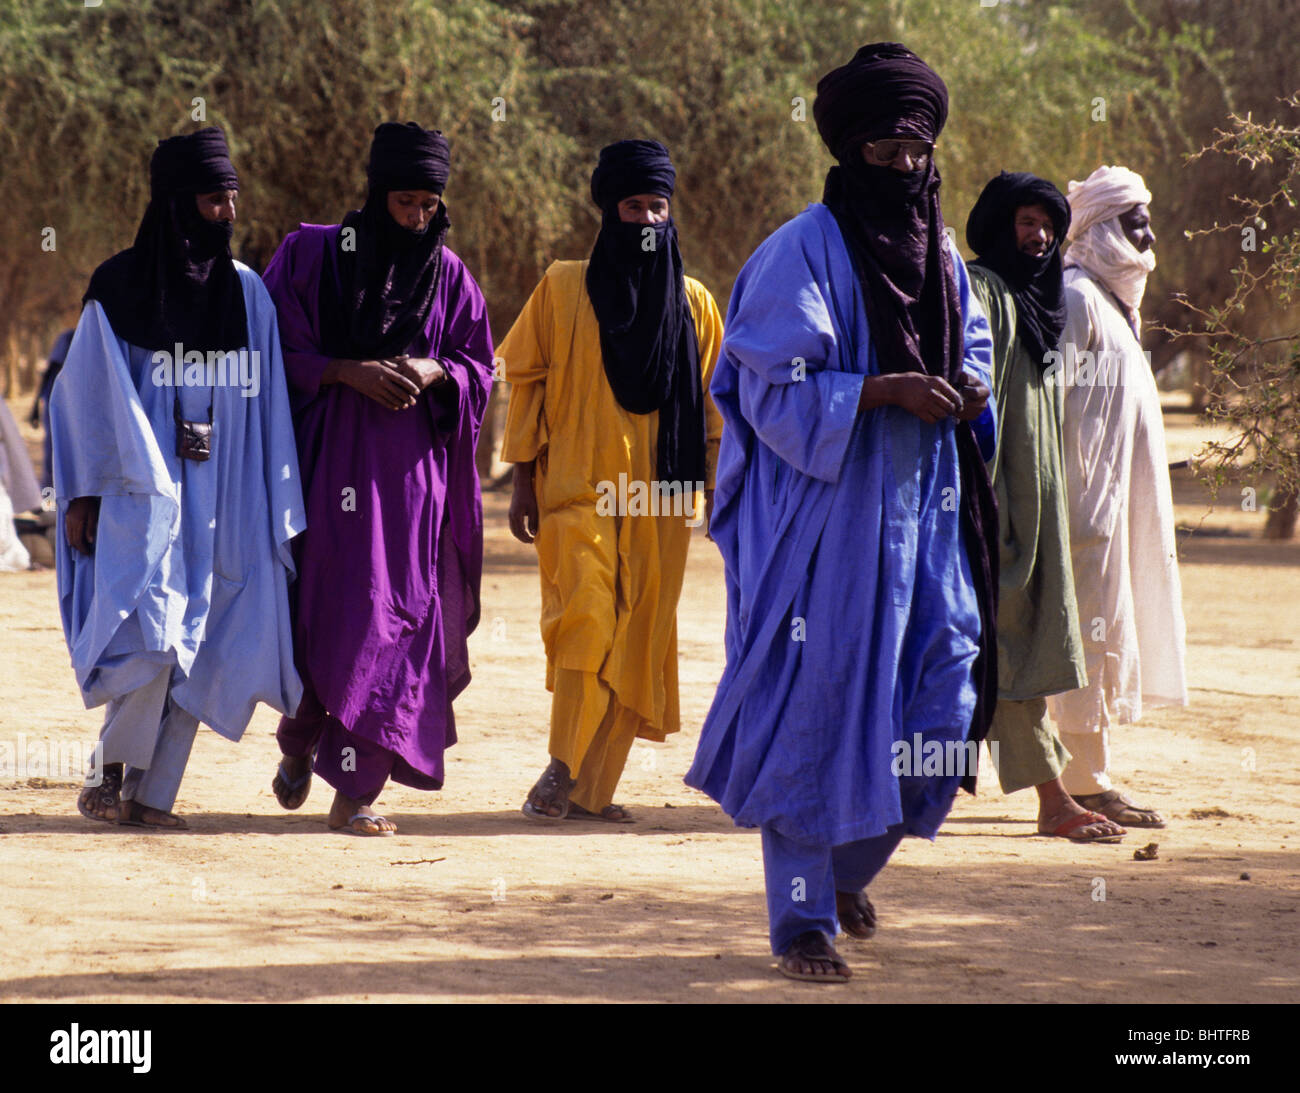 Akadaney, zentralen Niger, Westafrika. Fulani Nomaden, Maenner, Münder Verhüllt in Tuareg Mode. Jährliche Zusammenkunft, die Gerewol. Stockfoto